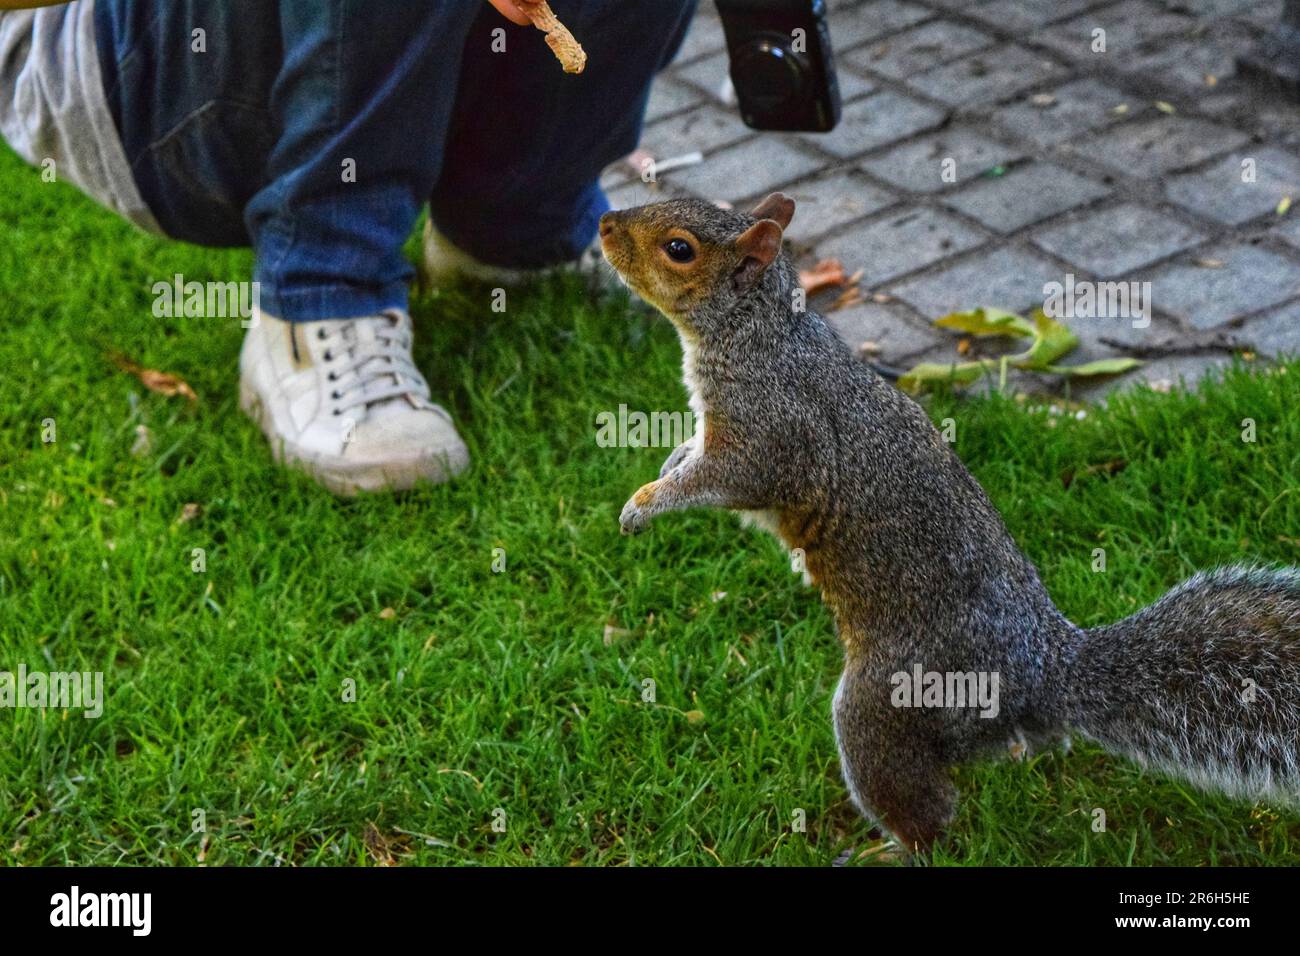 Vivi la magia delle interazioni uomo-animale nel parco mentre cani e scoiattoli si impegnano giocosamente con le persone. Momenti di gioia catturati in un vibrante Foto Stock